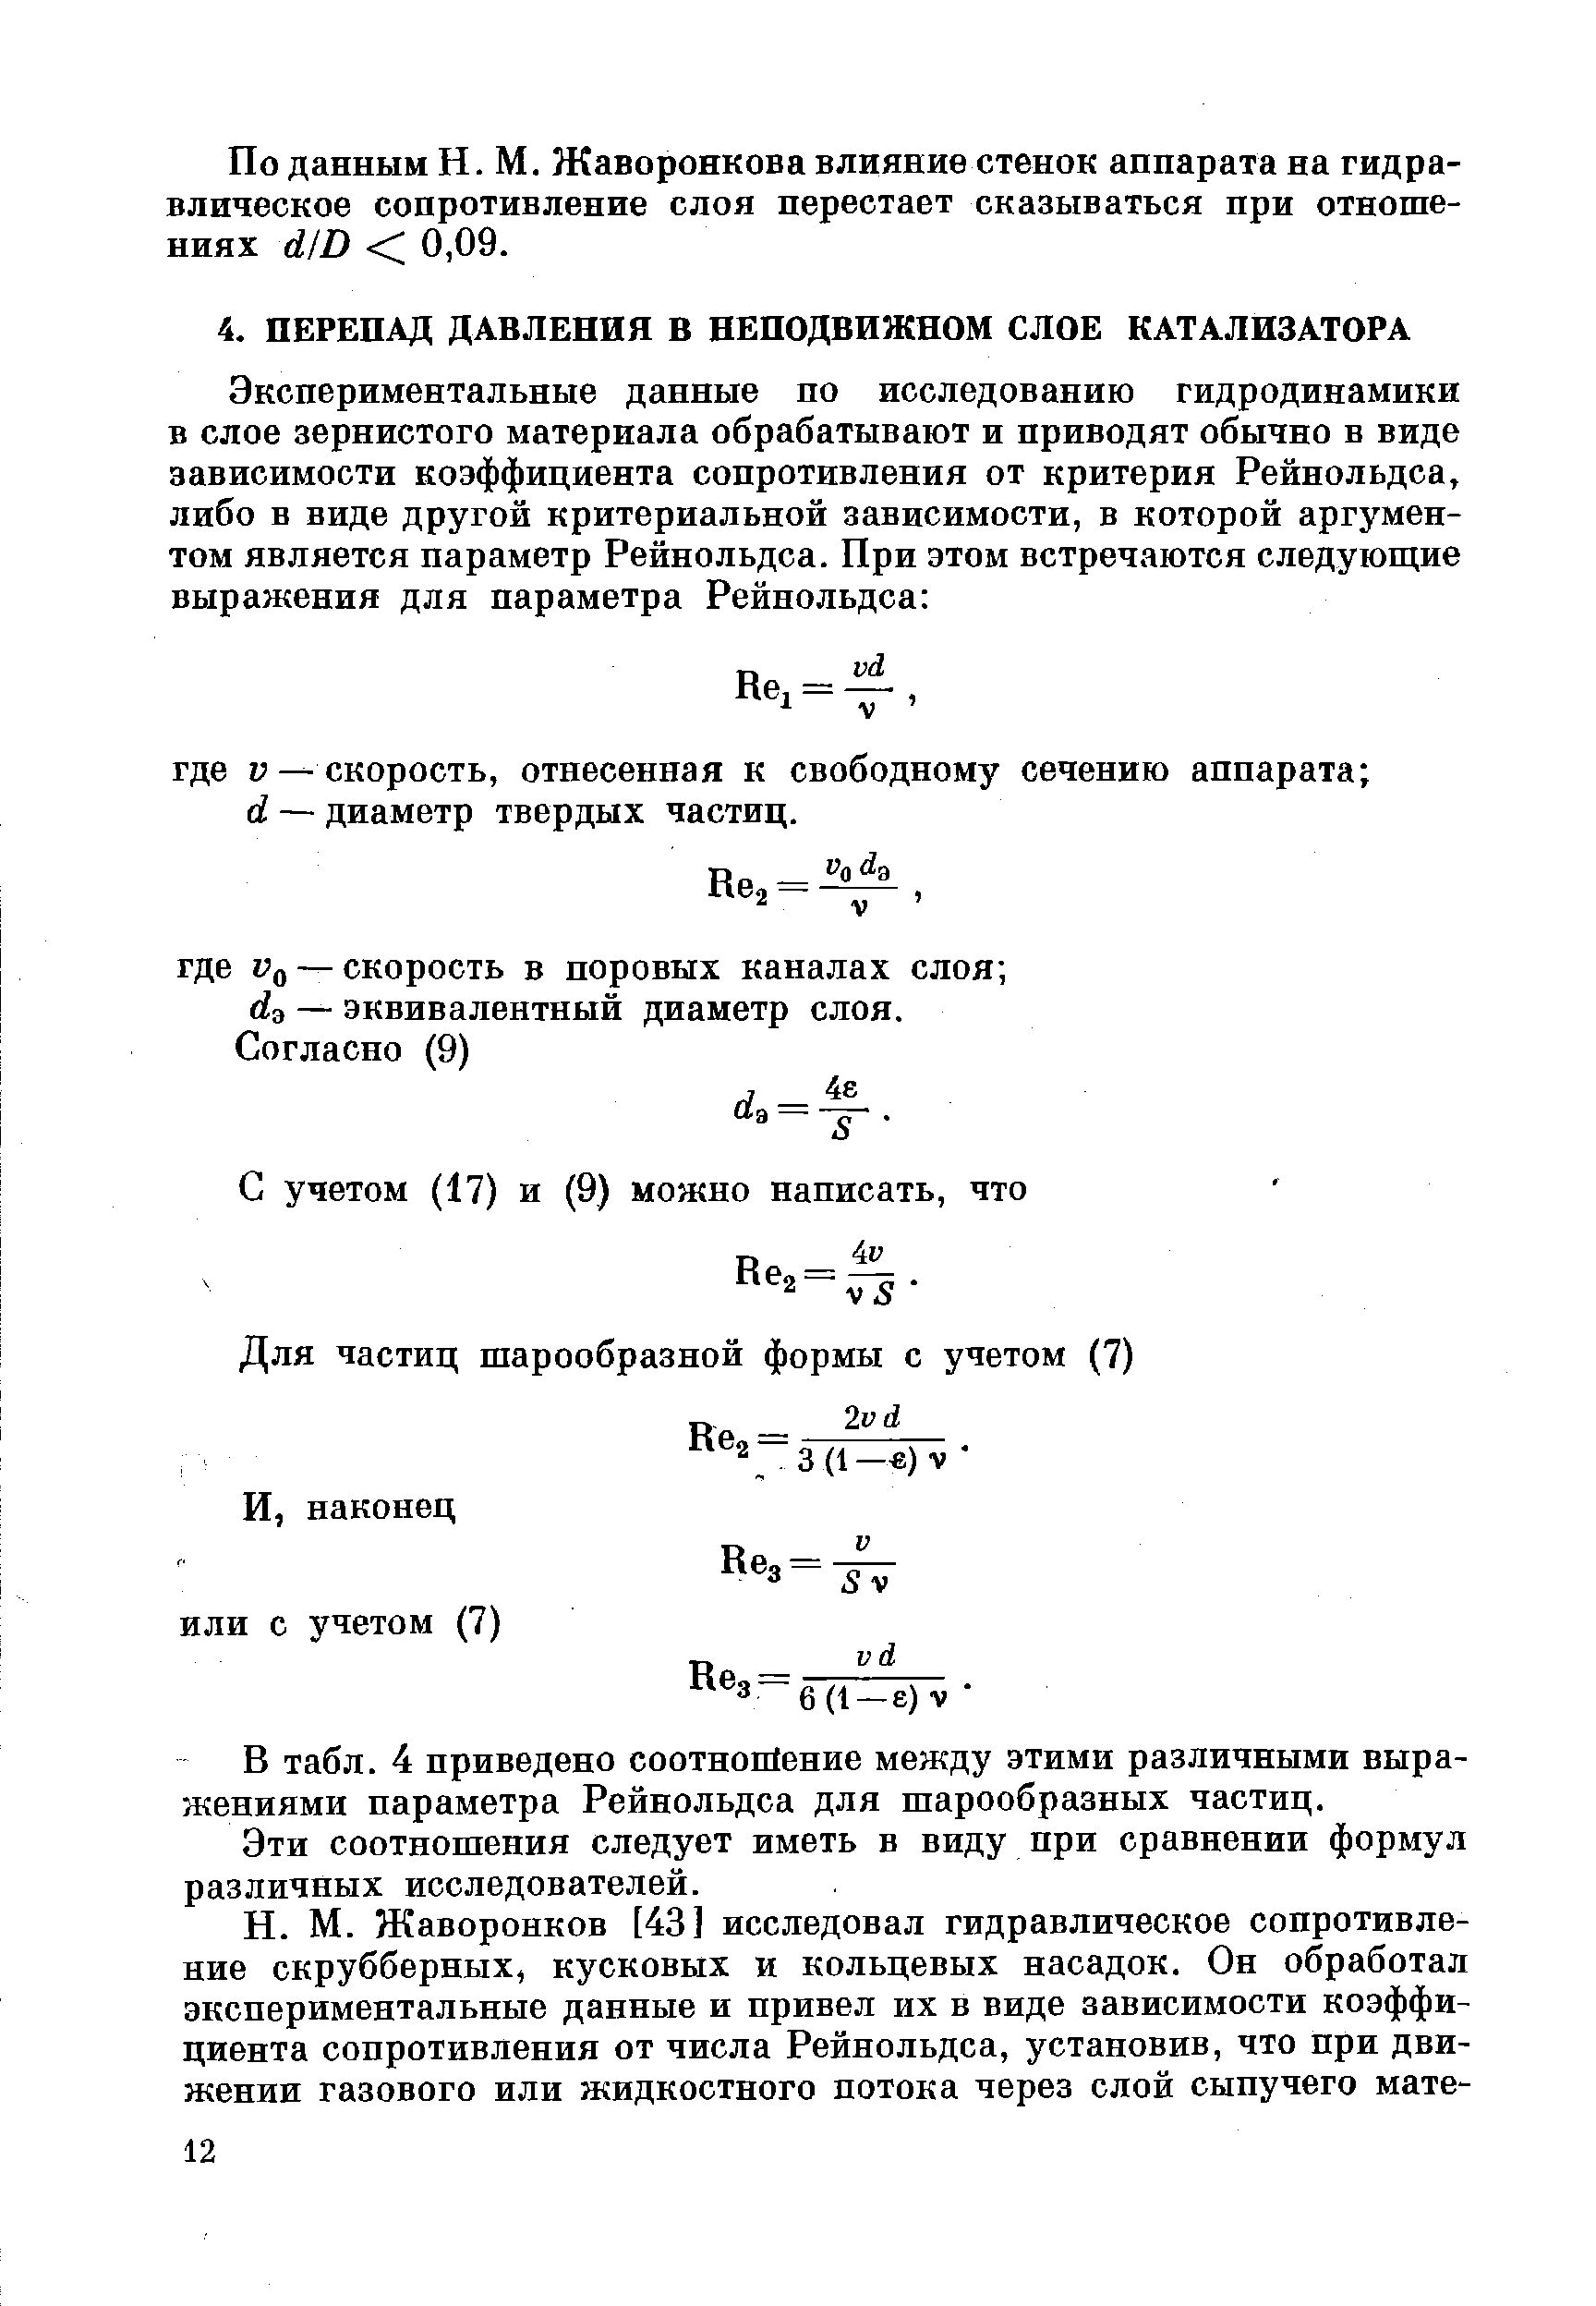 В табл. 4 приведено соотнойение между этими различными выражениями параметра Рейнольдса для шарообразных частиц.